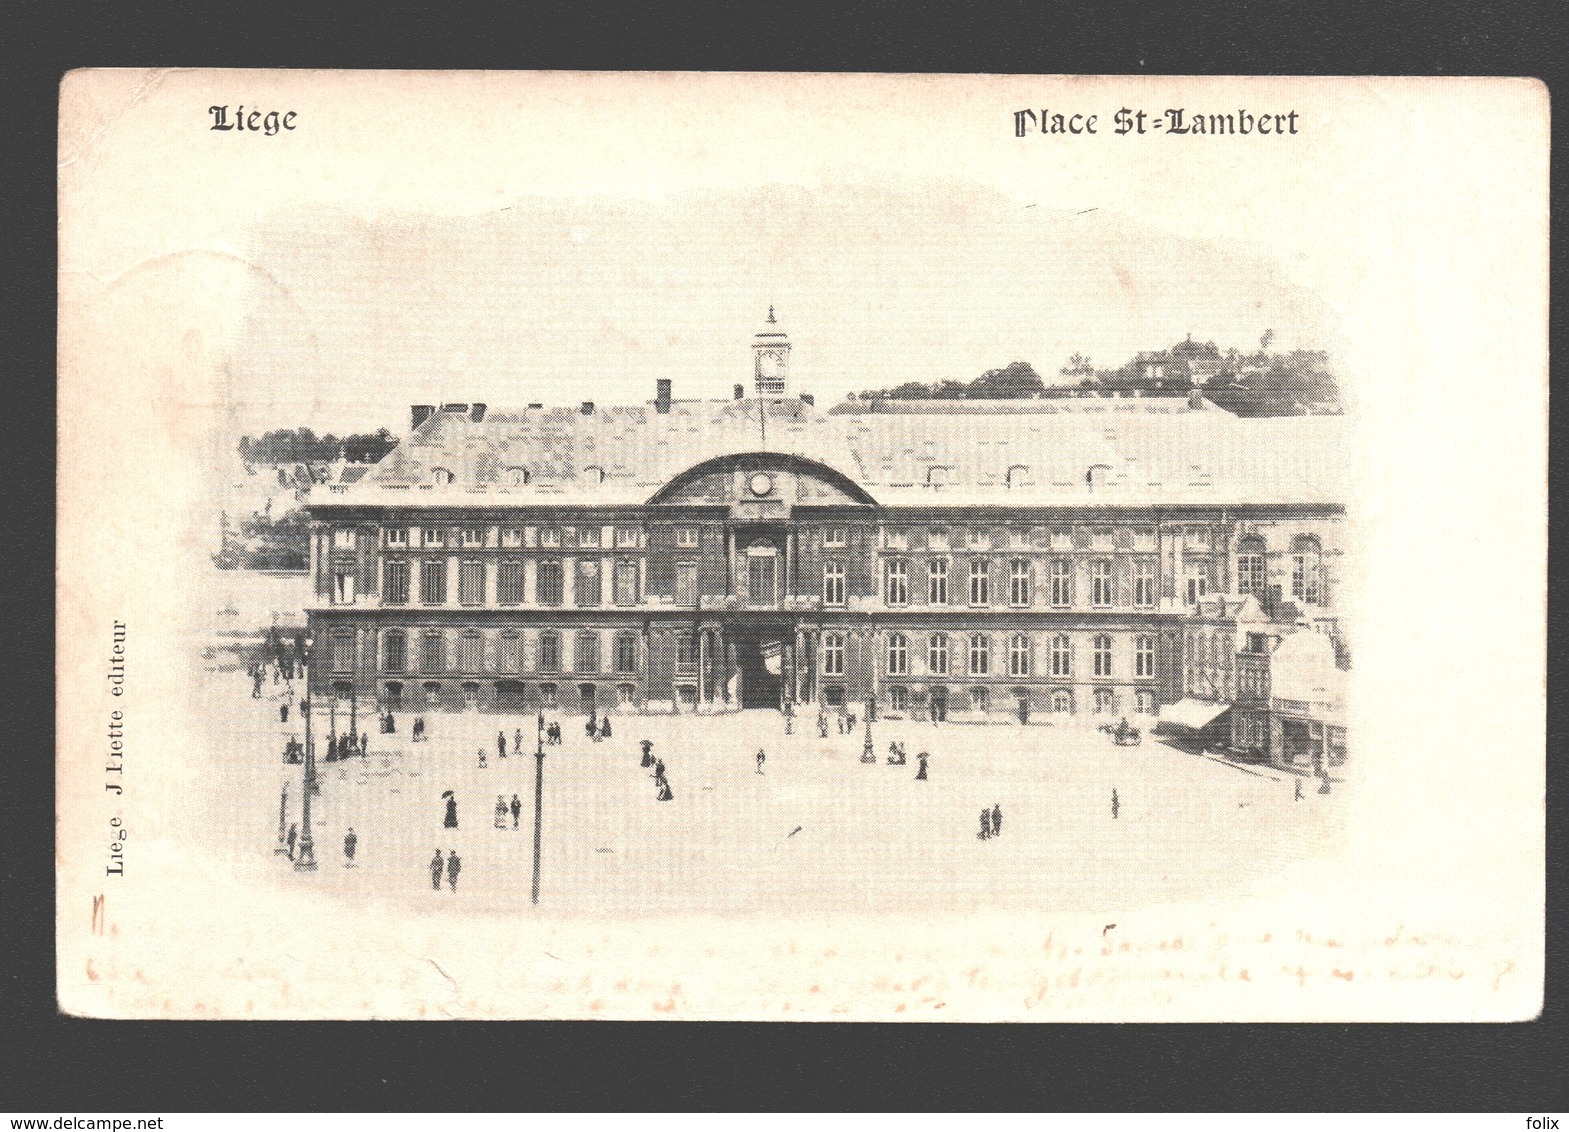 Liège - Place St-Lambert - 1900 - Dos Simple - éd. J. Piette - Liege